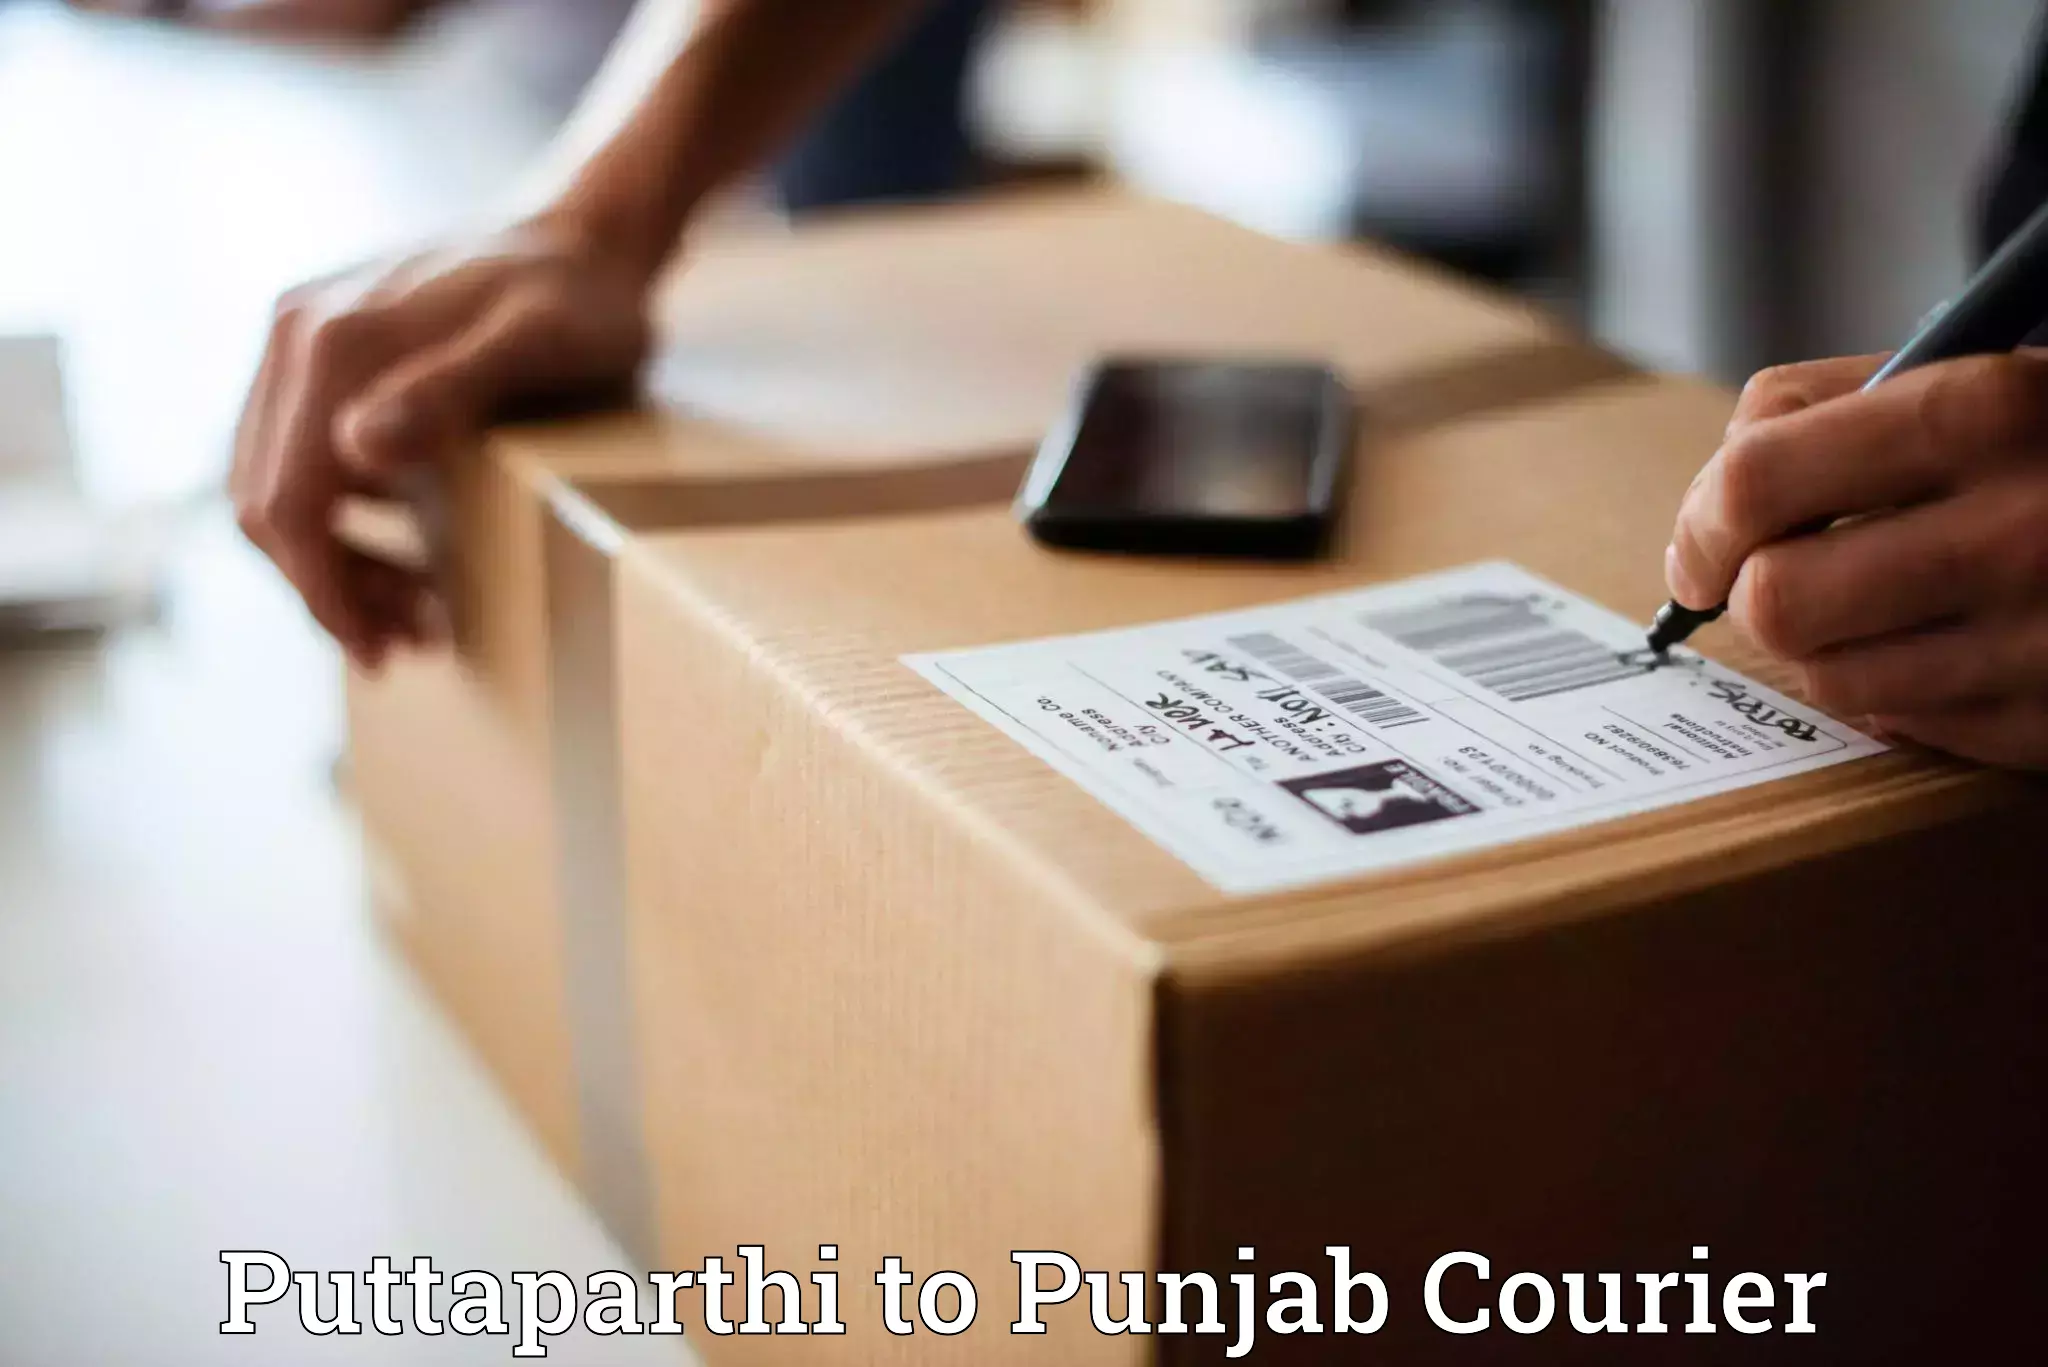 Express delivery network Puttaparthi to Guru Nanak Dev University Amritsar